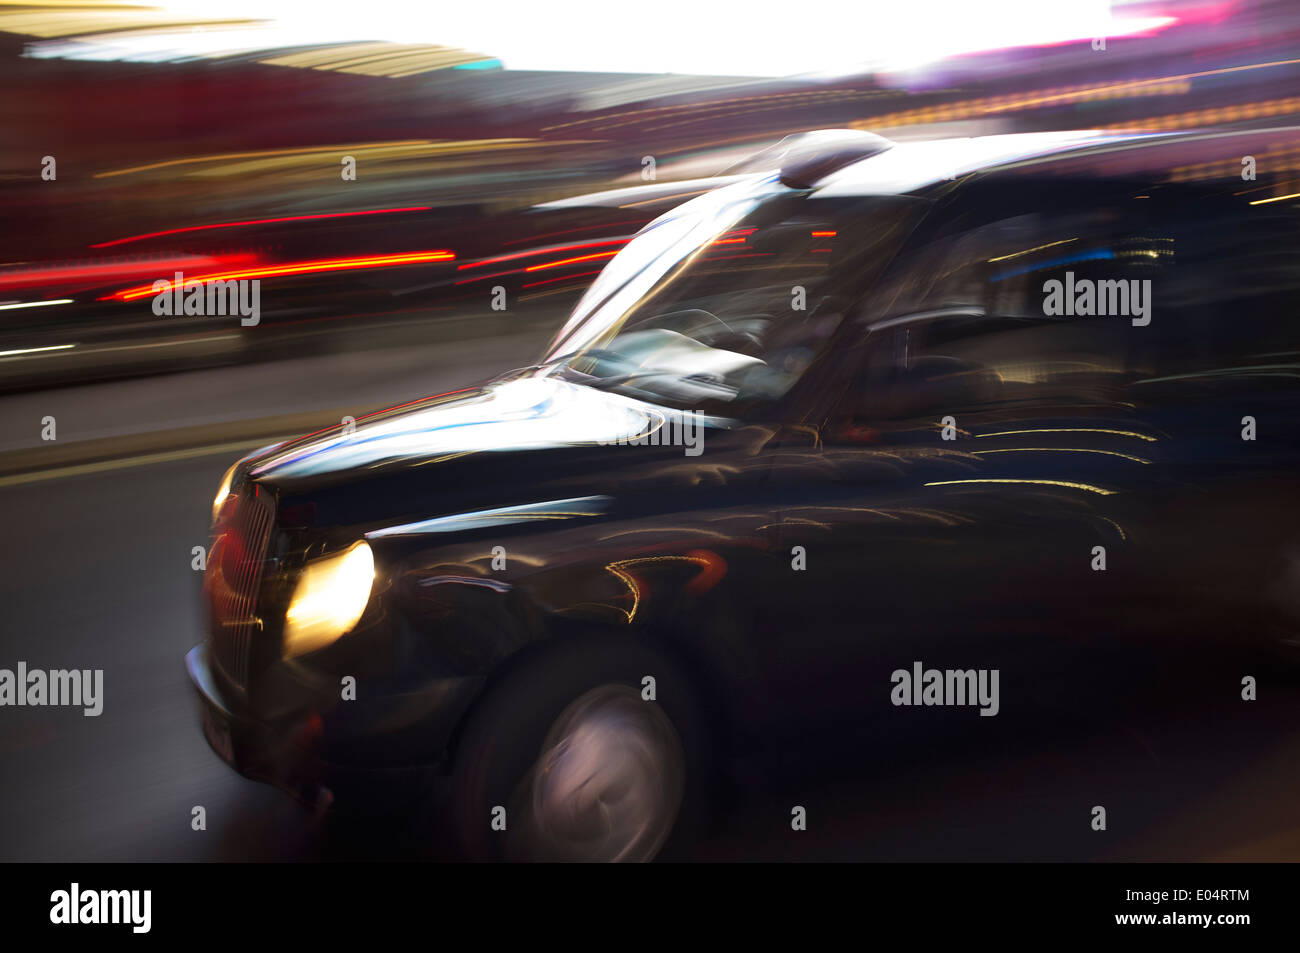 Abstrakte verschwommenes Bild von einem London-Taxi fahren auf einer Straße. Stockfoto